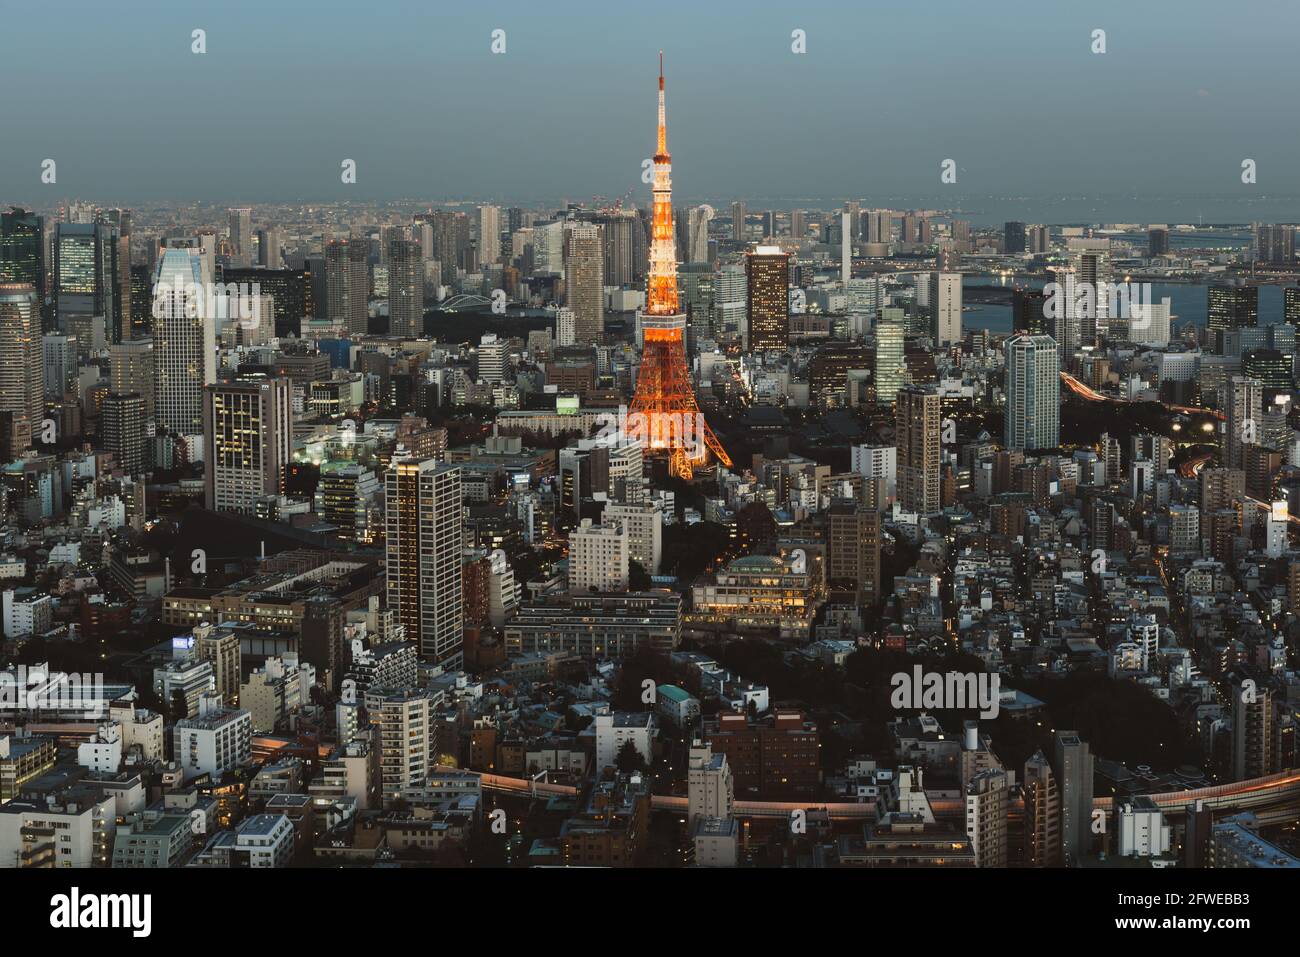 Tokyo, Japon - 14 janvier 2016 : vue sur les gratte-ciel de Tokyo au coucher du soleil avec la Tour de Tokyo. Tokyo est à la fois la capitale et la plus grande ville du Japon. Banque D'Images